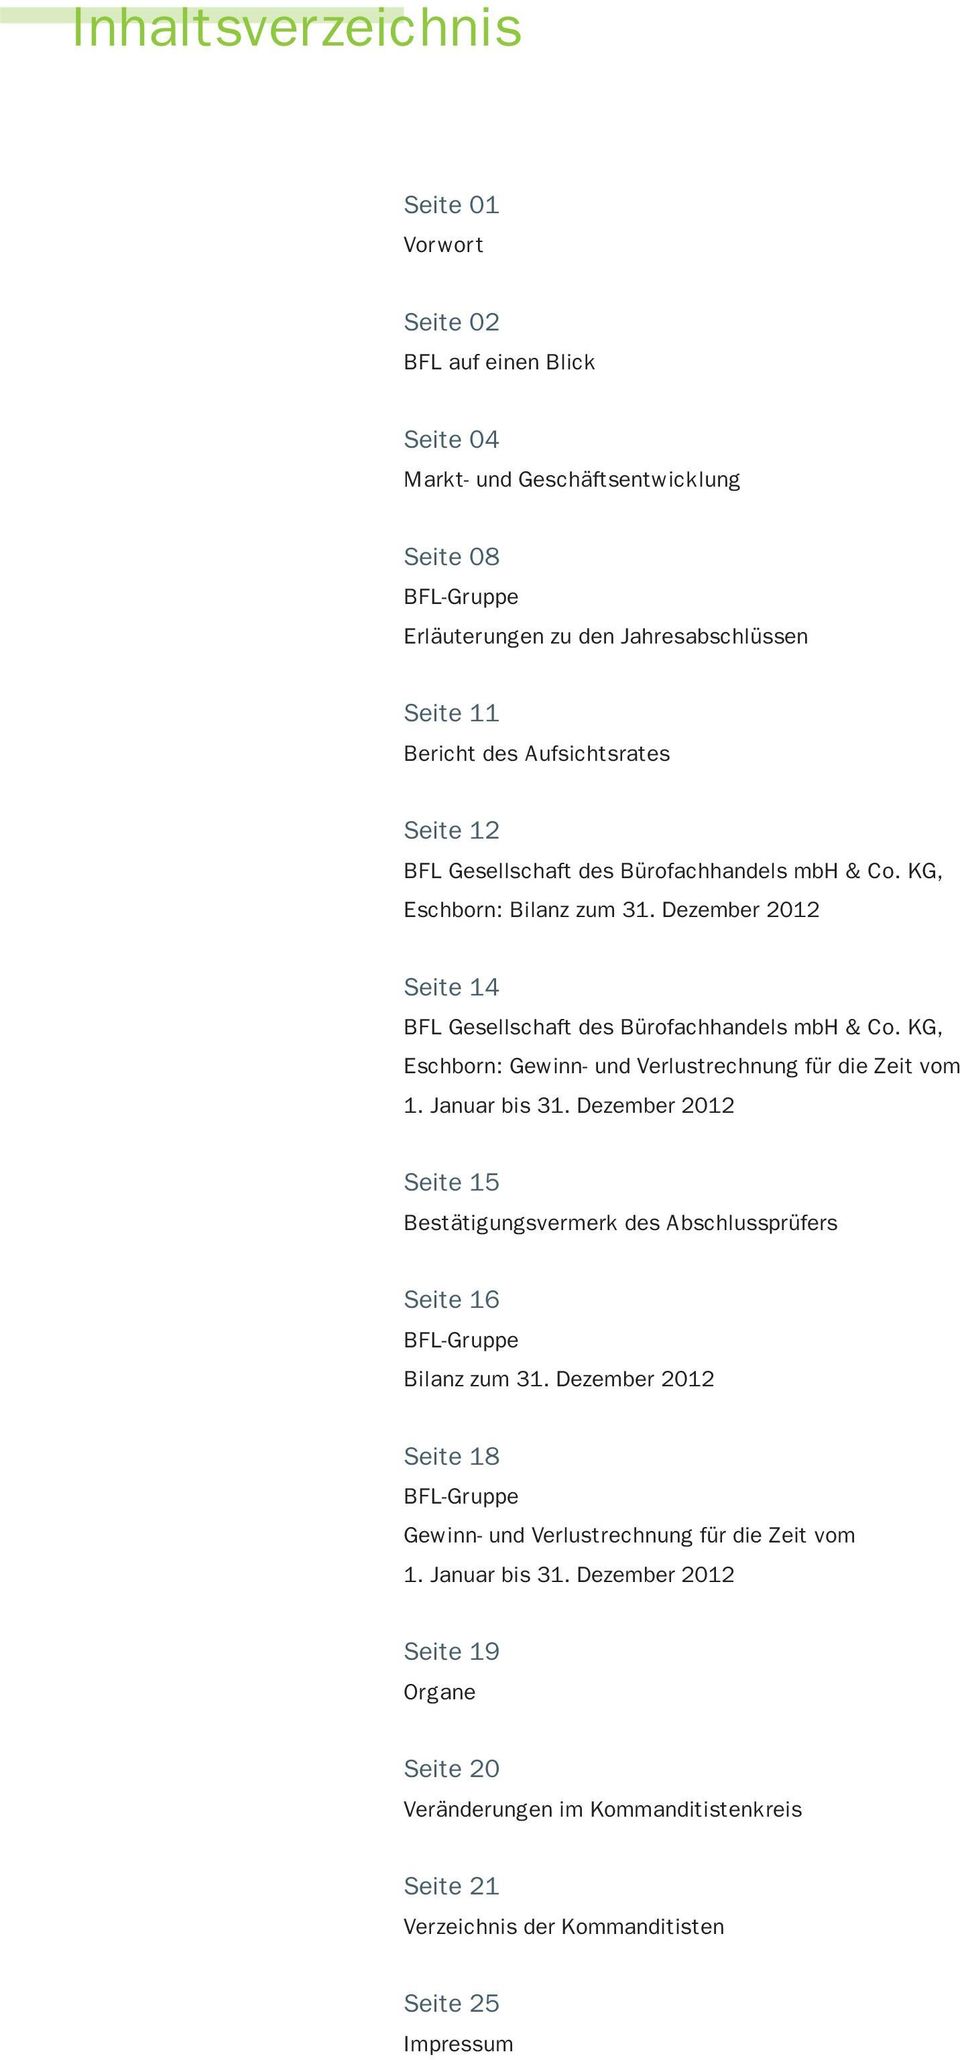 KG, Eschborn: Gewinn- und Verlustrechnung für die Zeit vom 1. Januar bis 31. Dezember 2012 Seite 15 Bestätigungsvermerk des Abschlussprüfers Seite 16 BFL-Gruppe Bilanz zum 31.